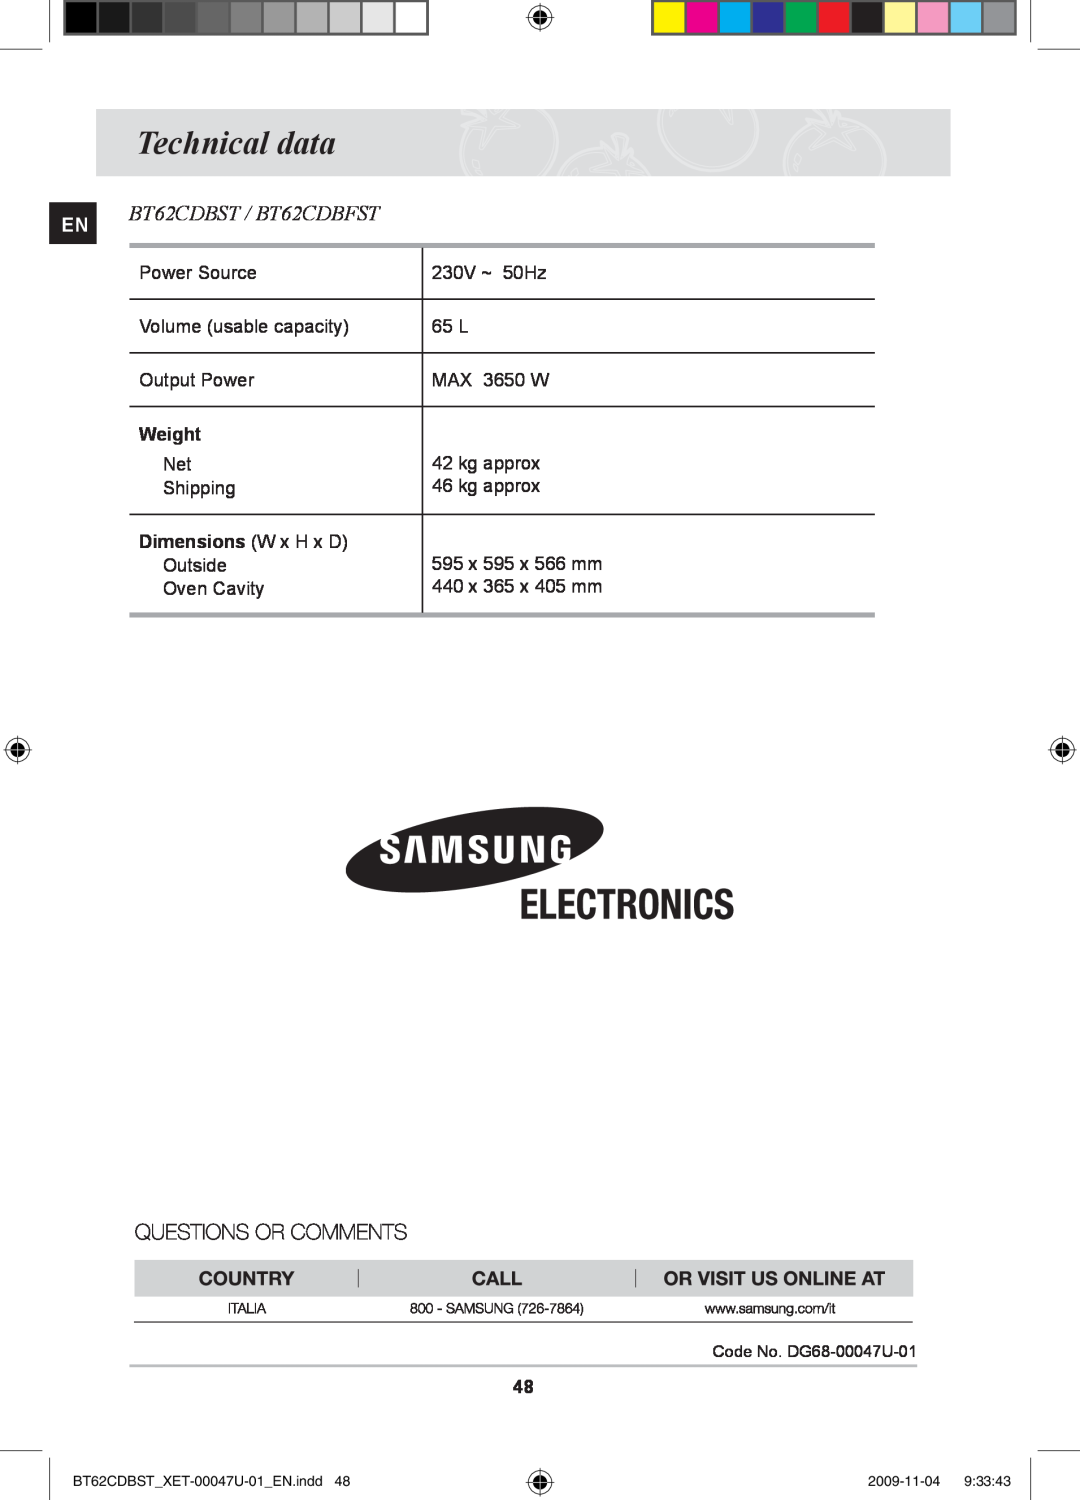 Samsung BT62CDBST/XET manual Technical data, BT62CDBST / BT62CDBFST, Weight, Dimensions W x H x D 